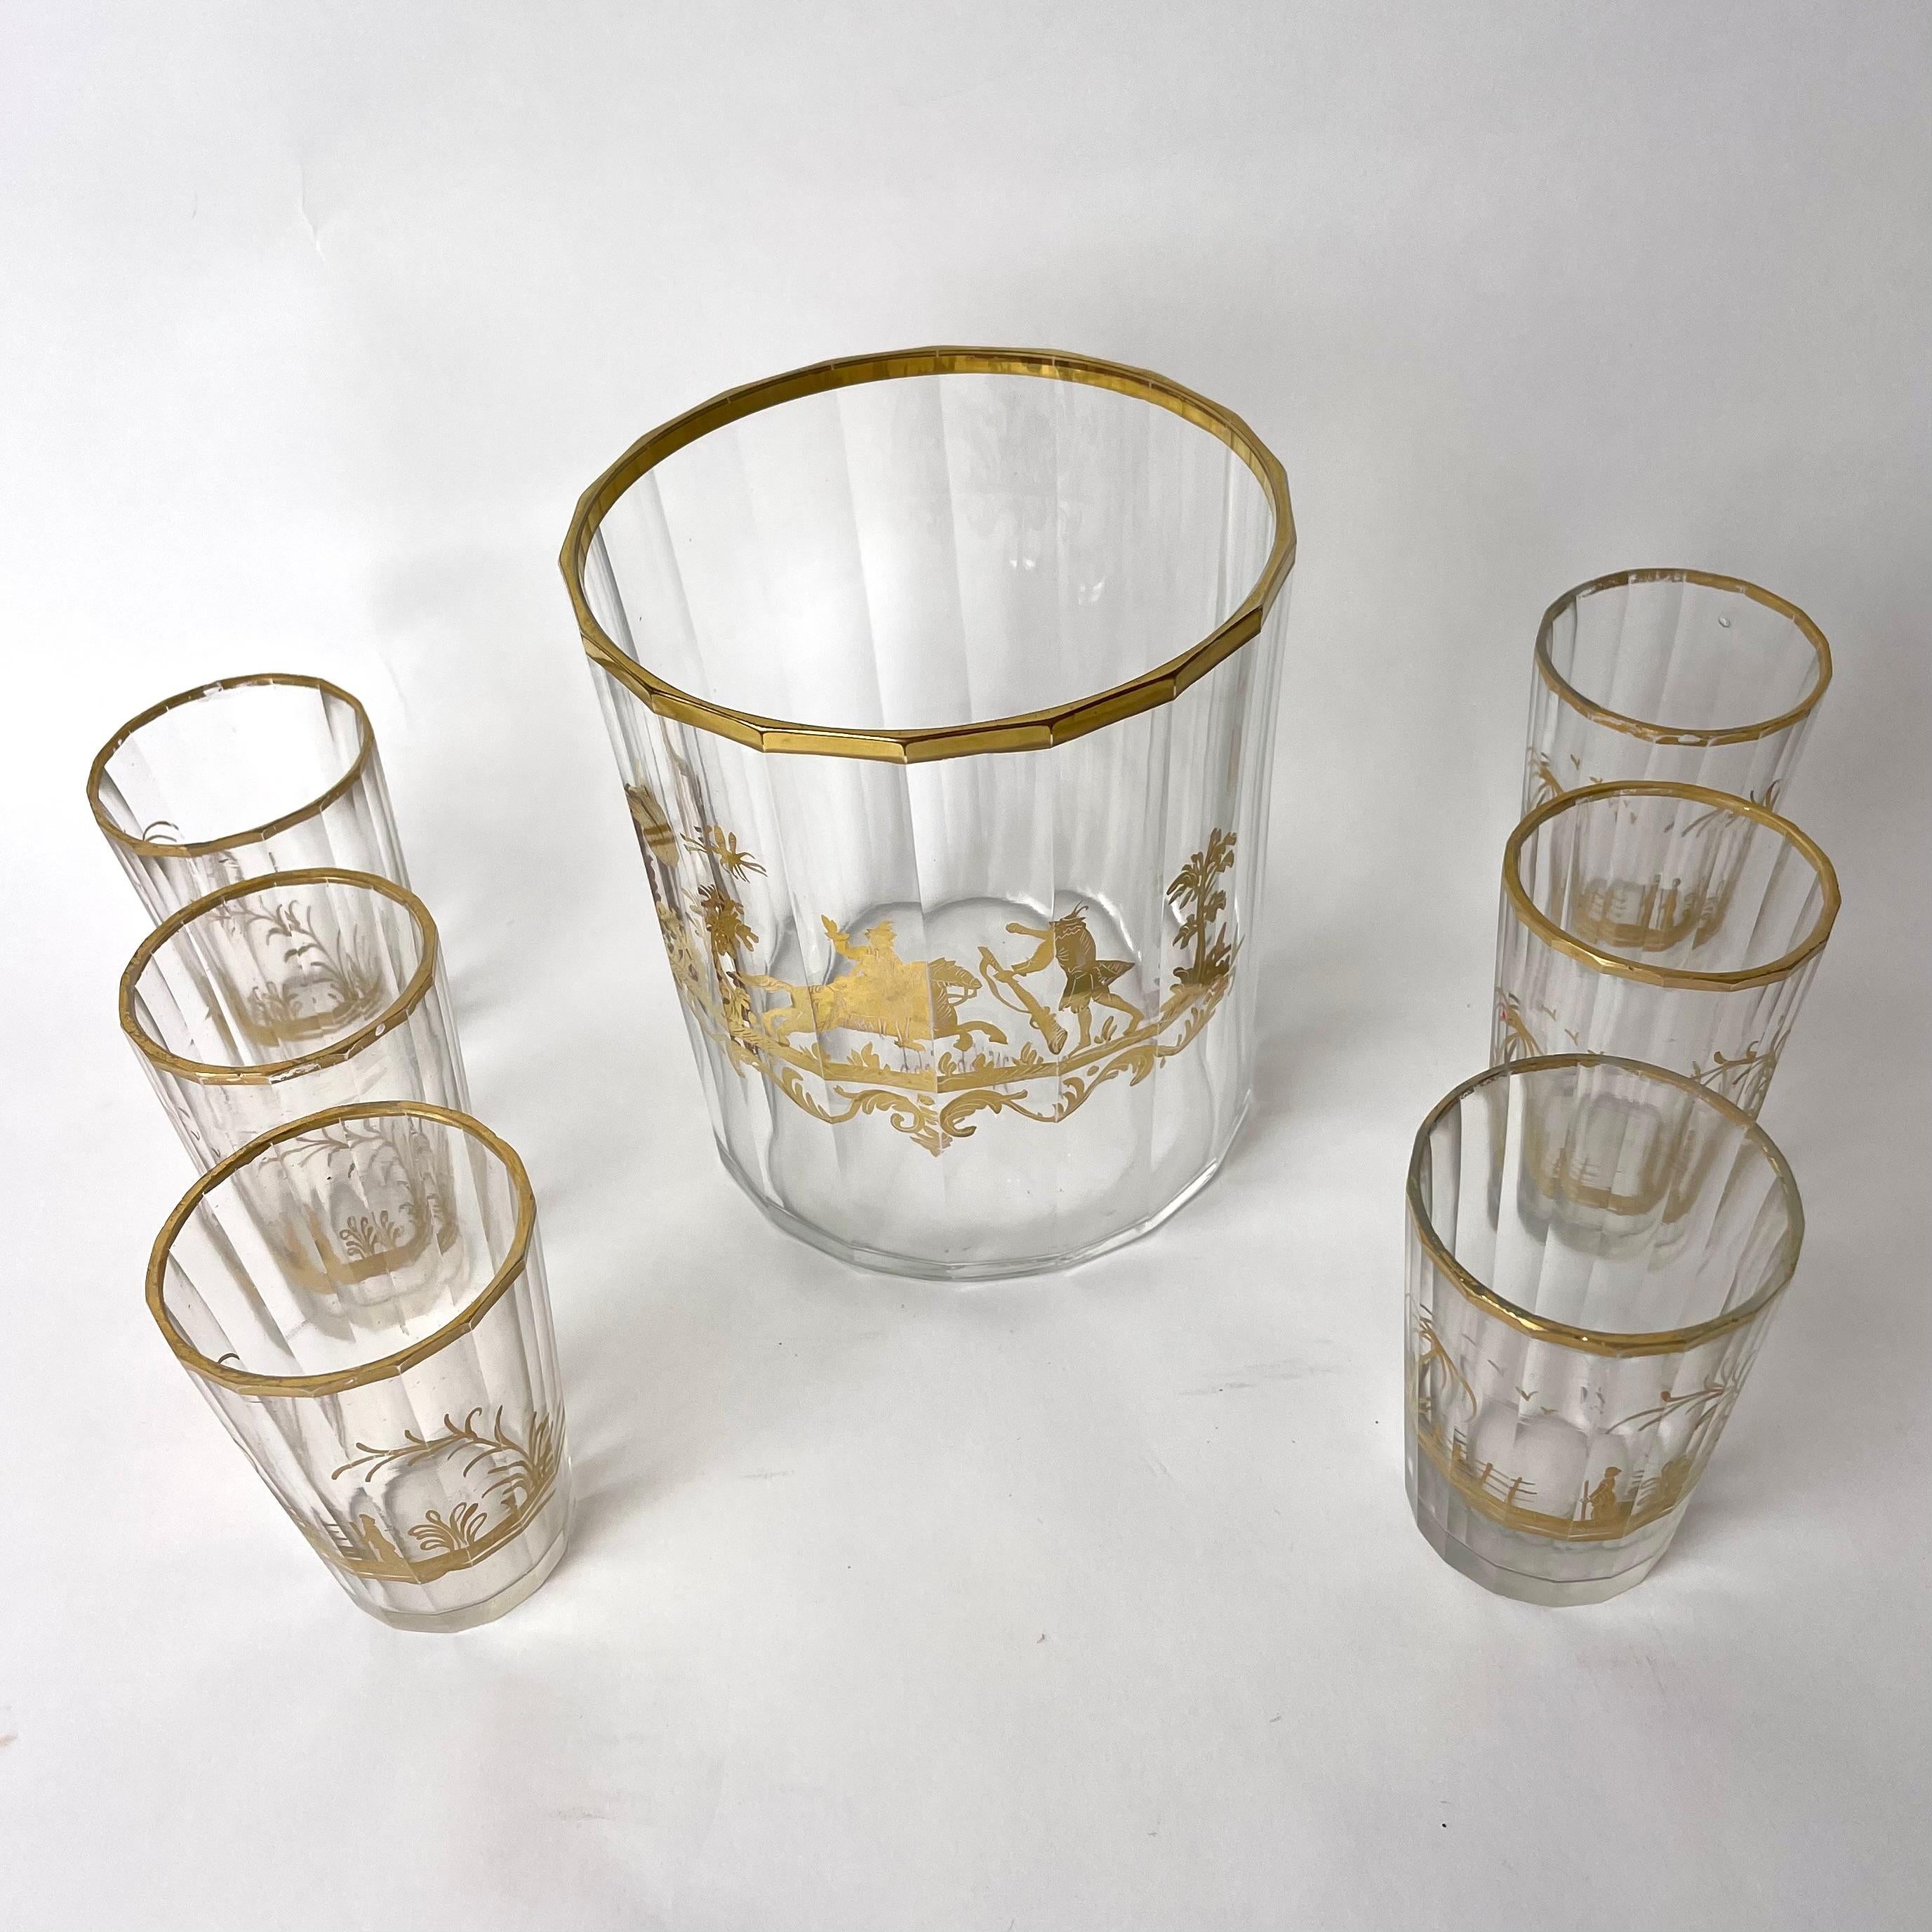 Elegant service à vodka en verre de cristal de la première moitié du 19e siècle. Belle décoration dorée sur le bol à vodka et les six verres qui l'accompagnent. 

Dimensions :

Bol, hauteur 14 cm, diamètre 13 cm

Six verres, hauteur 8,5 cm, diamètre